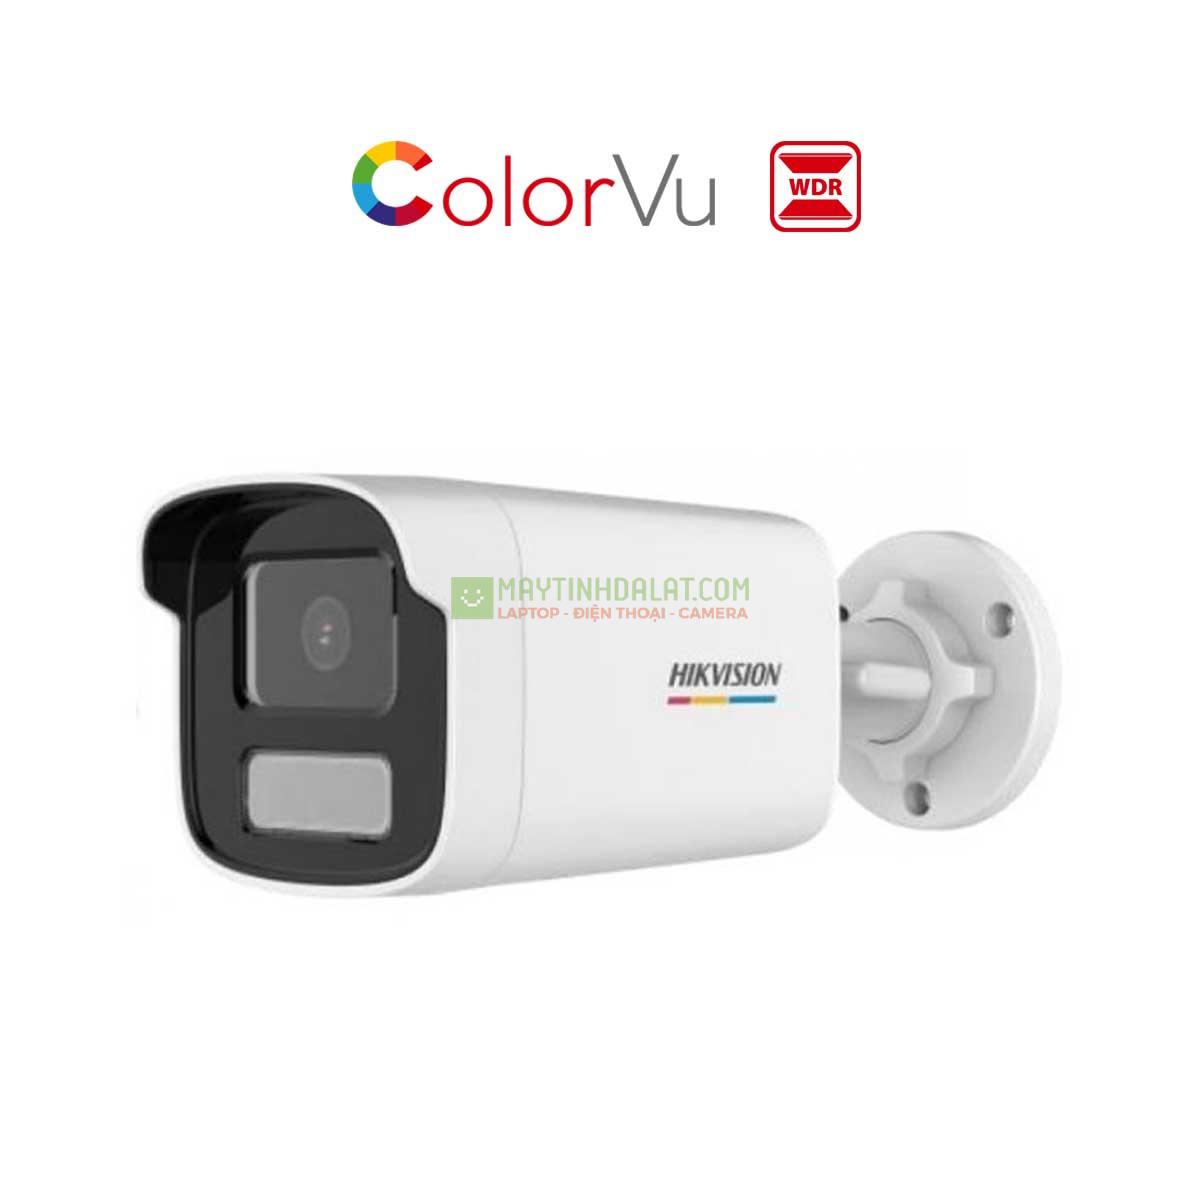 Camera IP thân trụ Hikvision Colorvu DS-2CD1T47G0-LUF C 4MP 2K, tích hợp mic, thẻ nhớ MicroSD